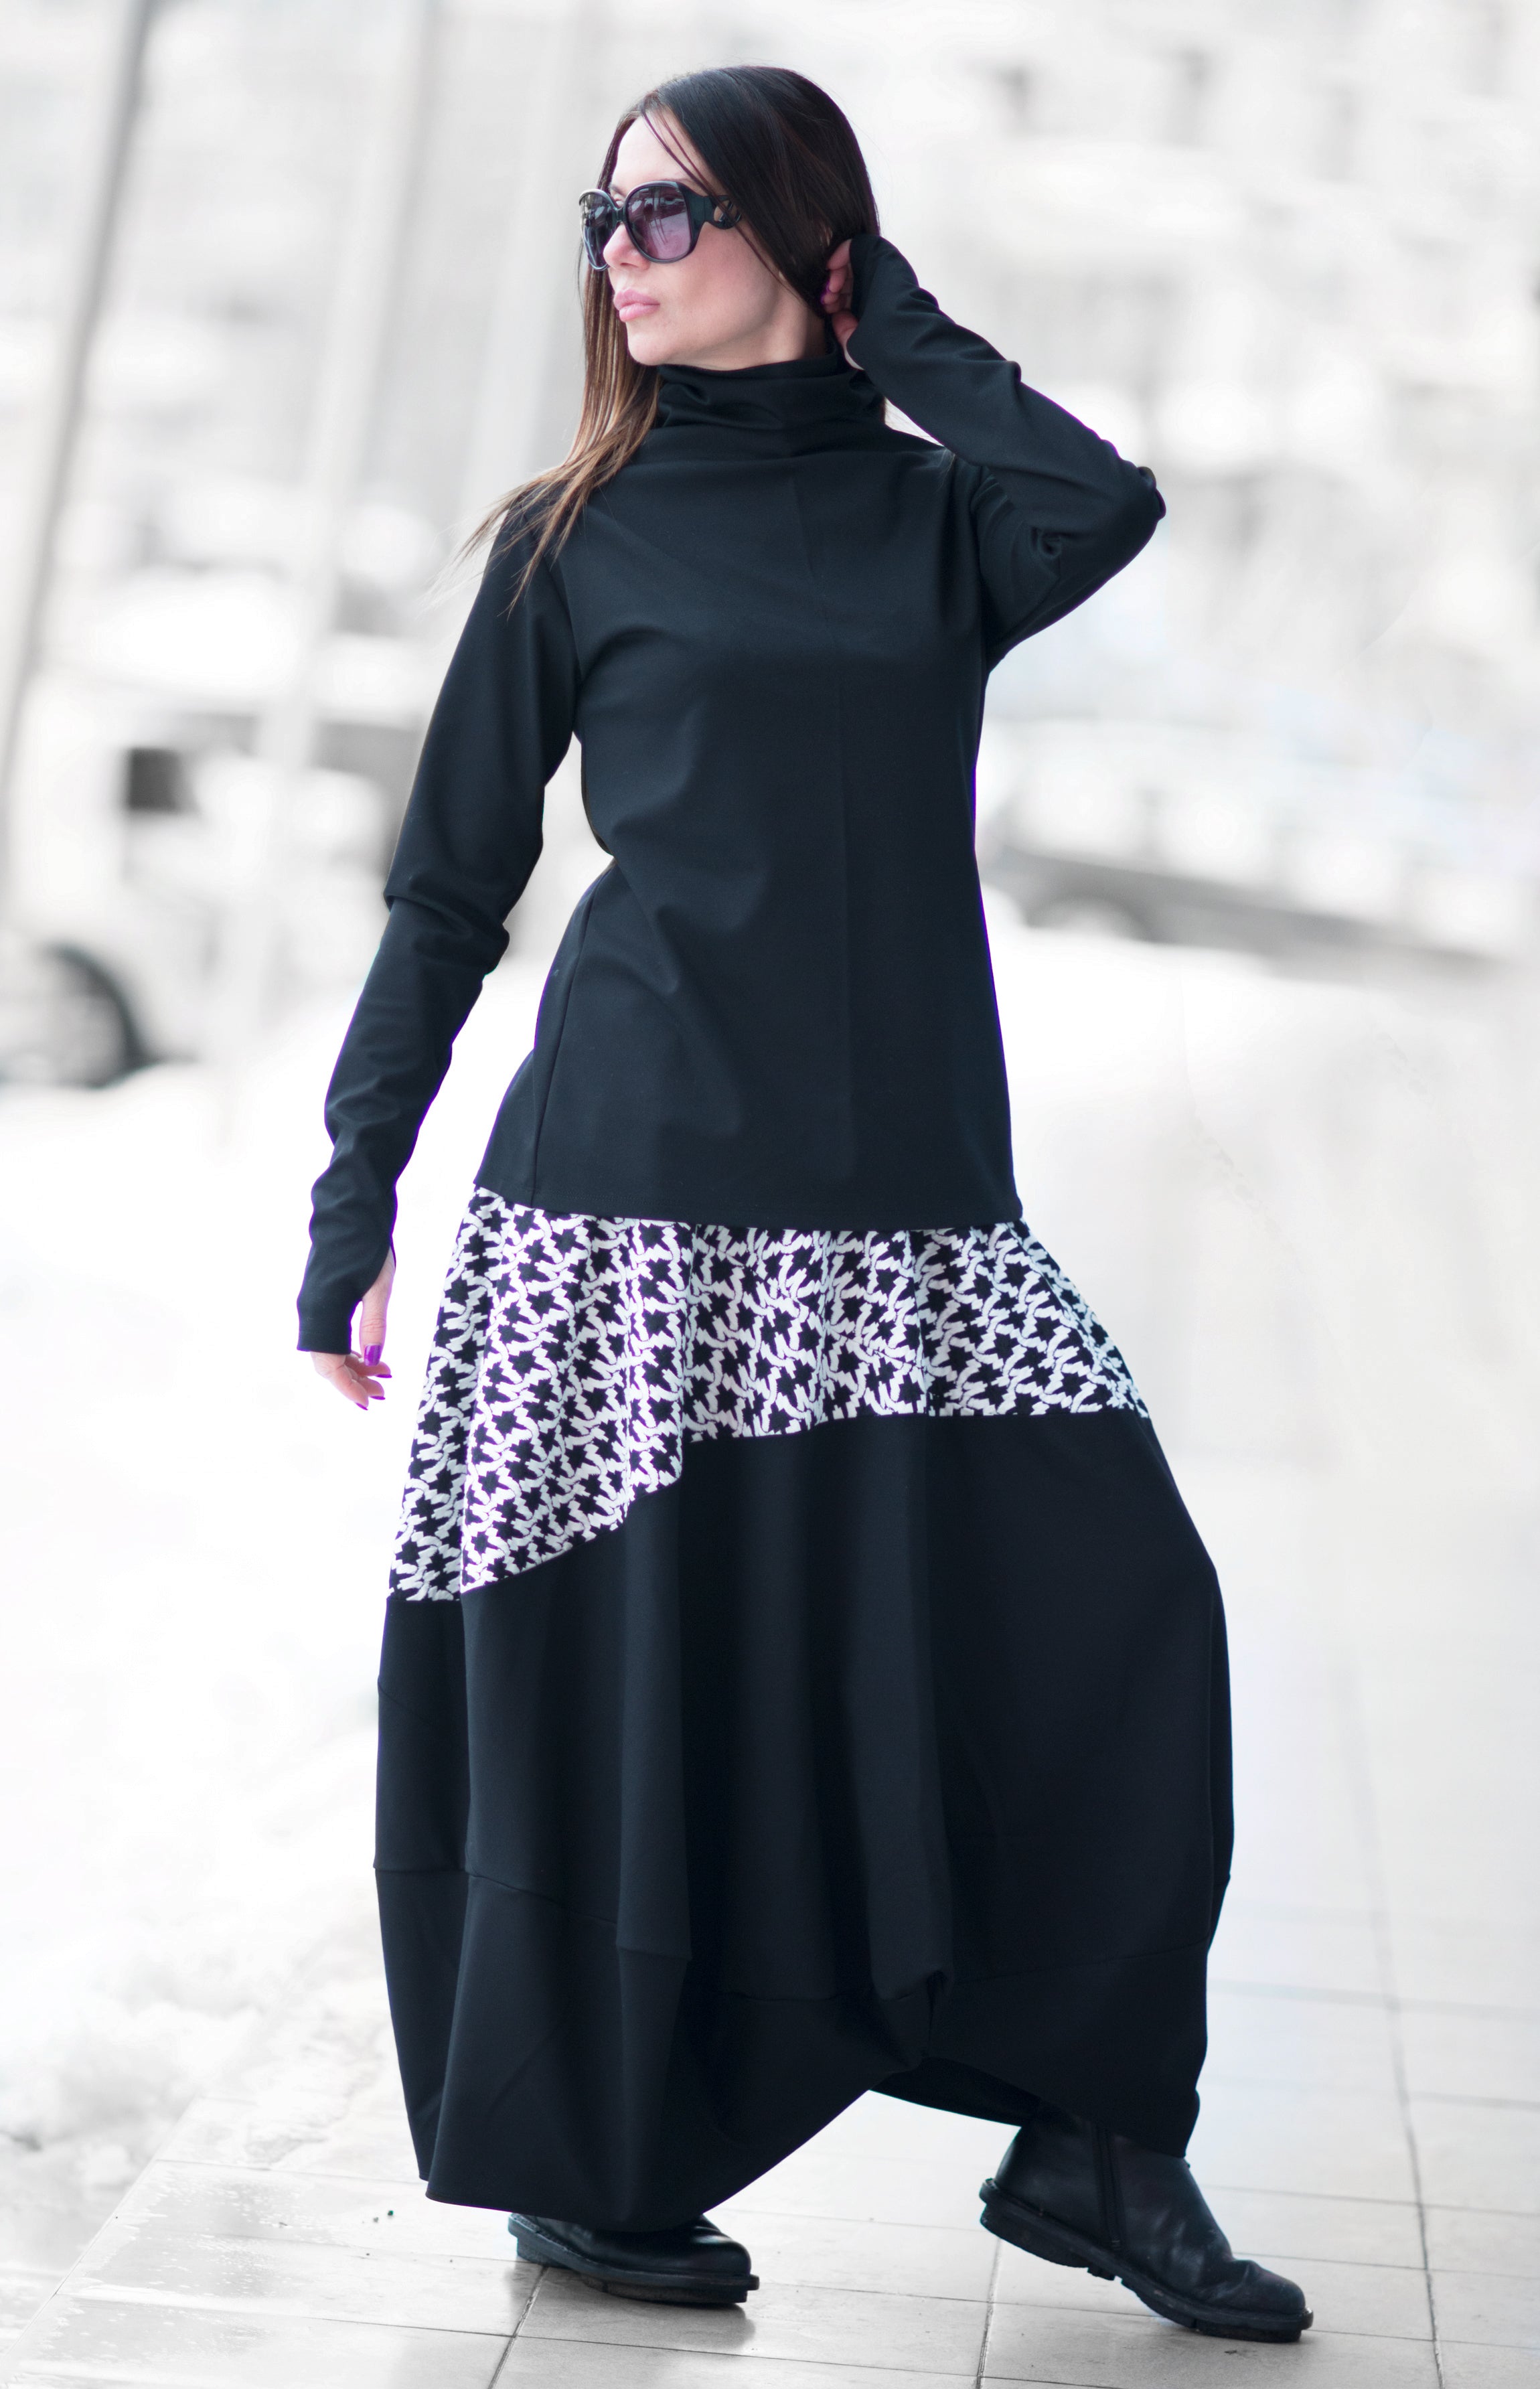 Black Shepherd's Plaid Cotton Skirt | EUG Fashion